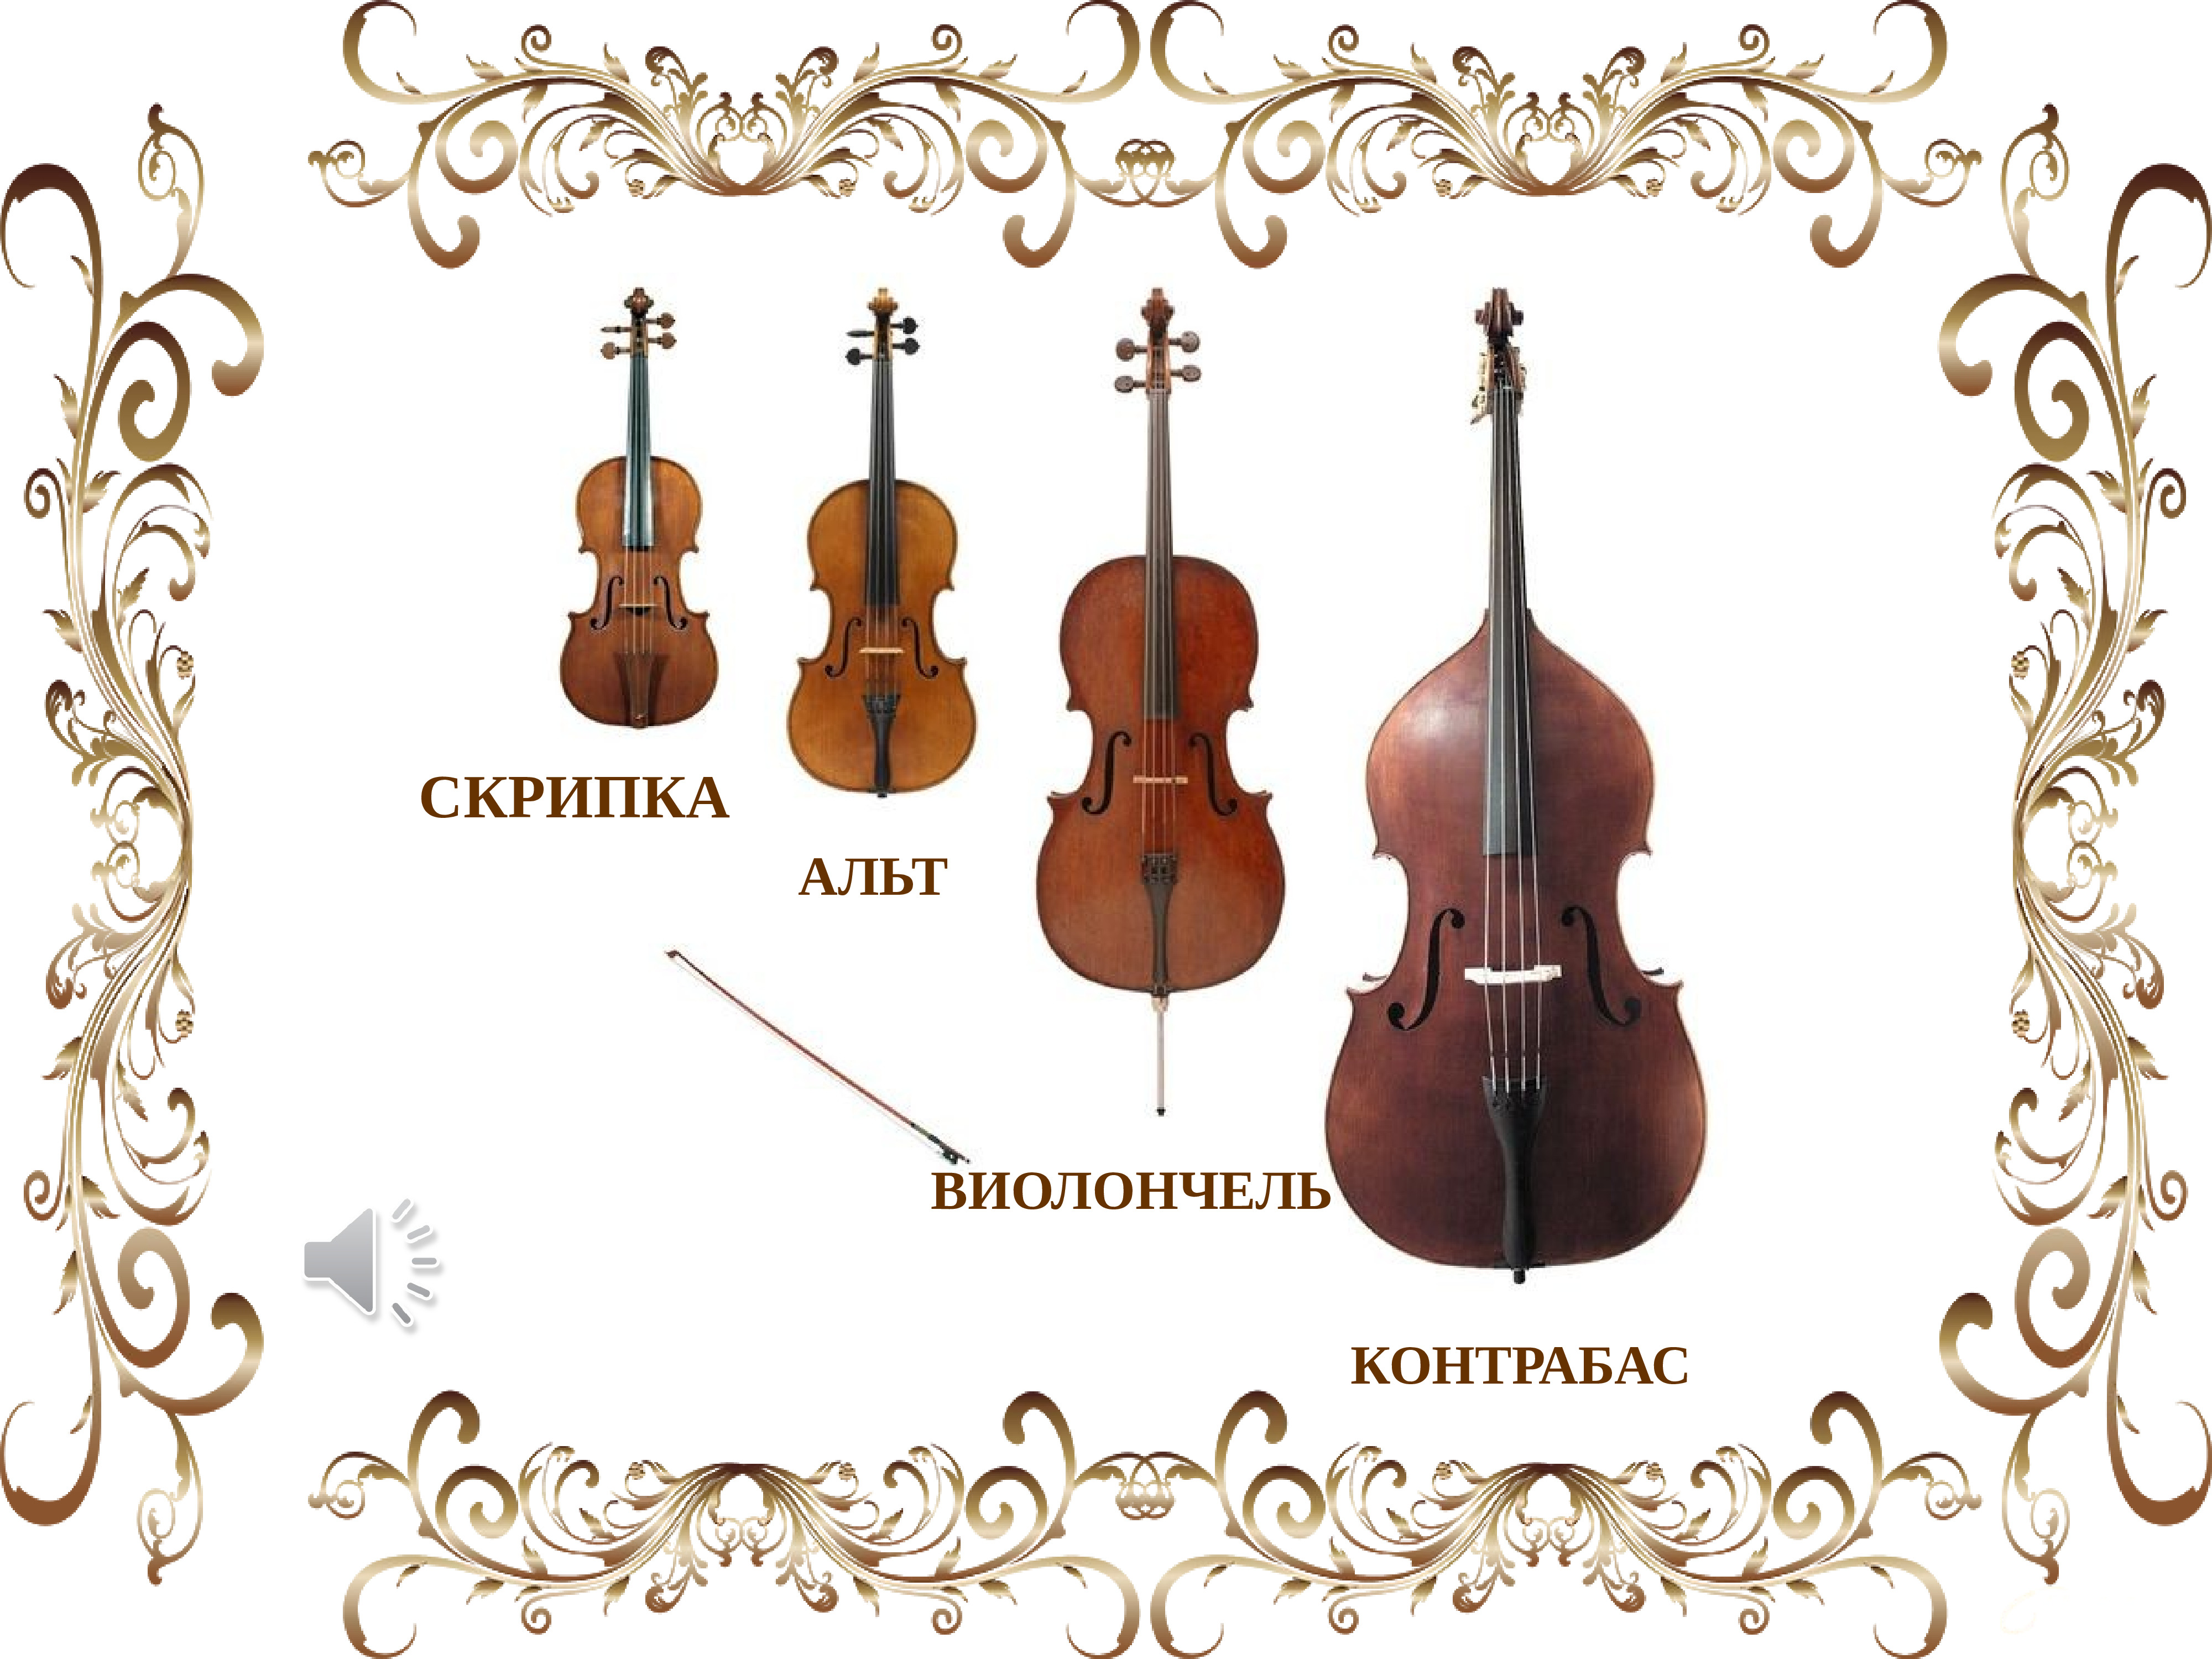 Струнно-смычковые инструменты симфонического оркестра